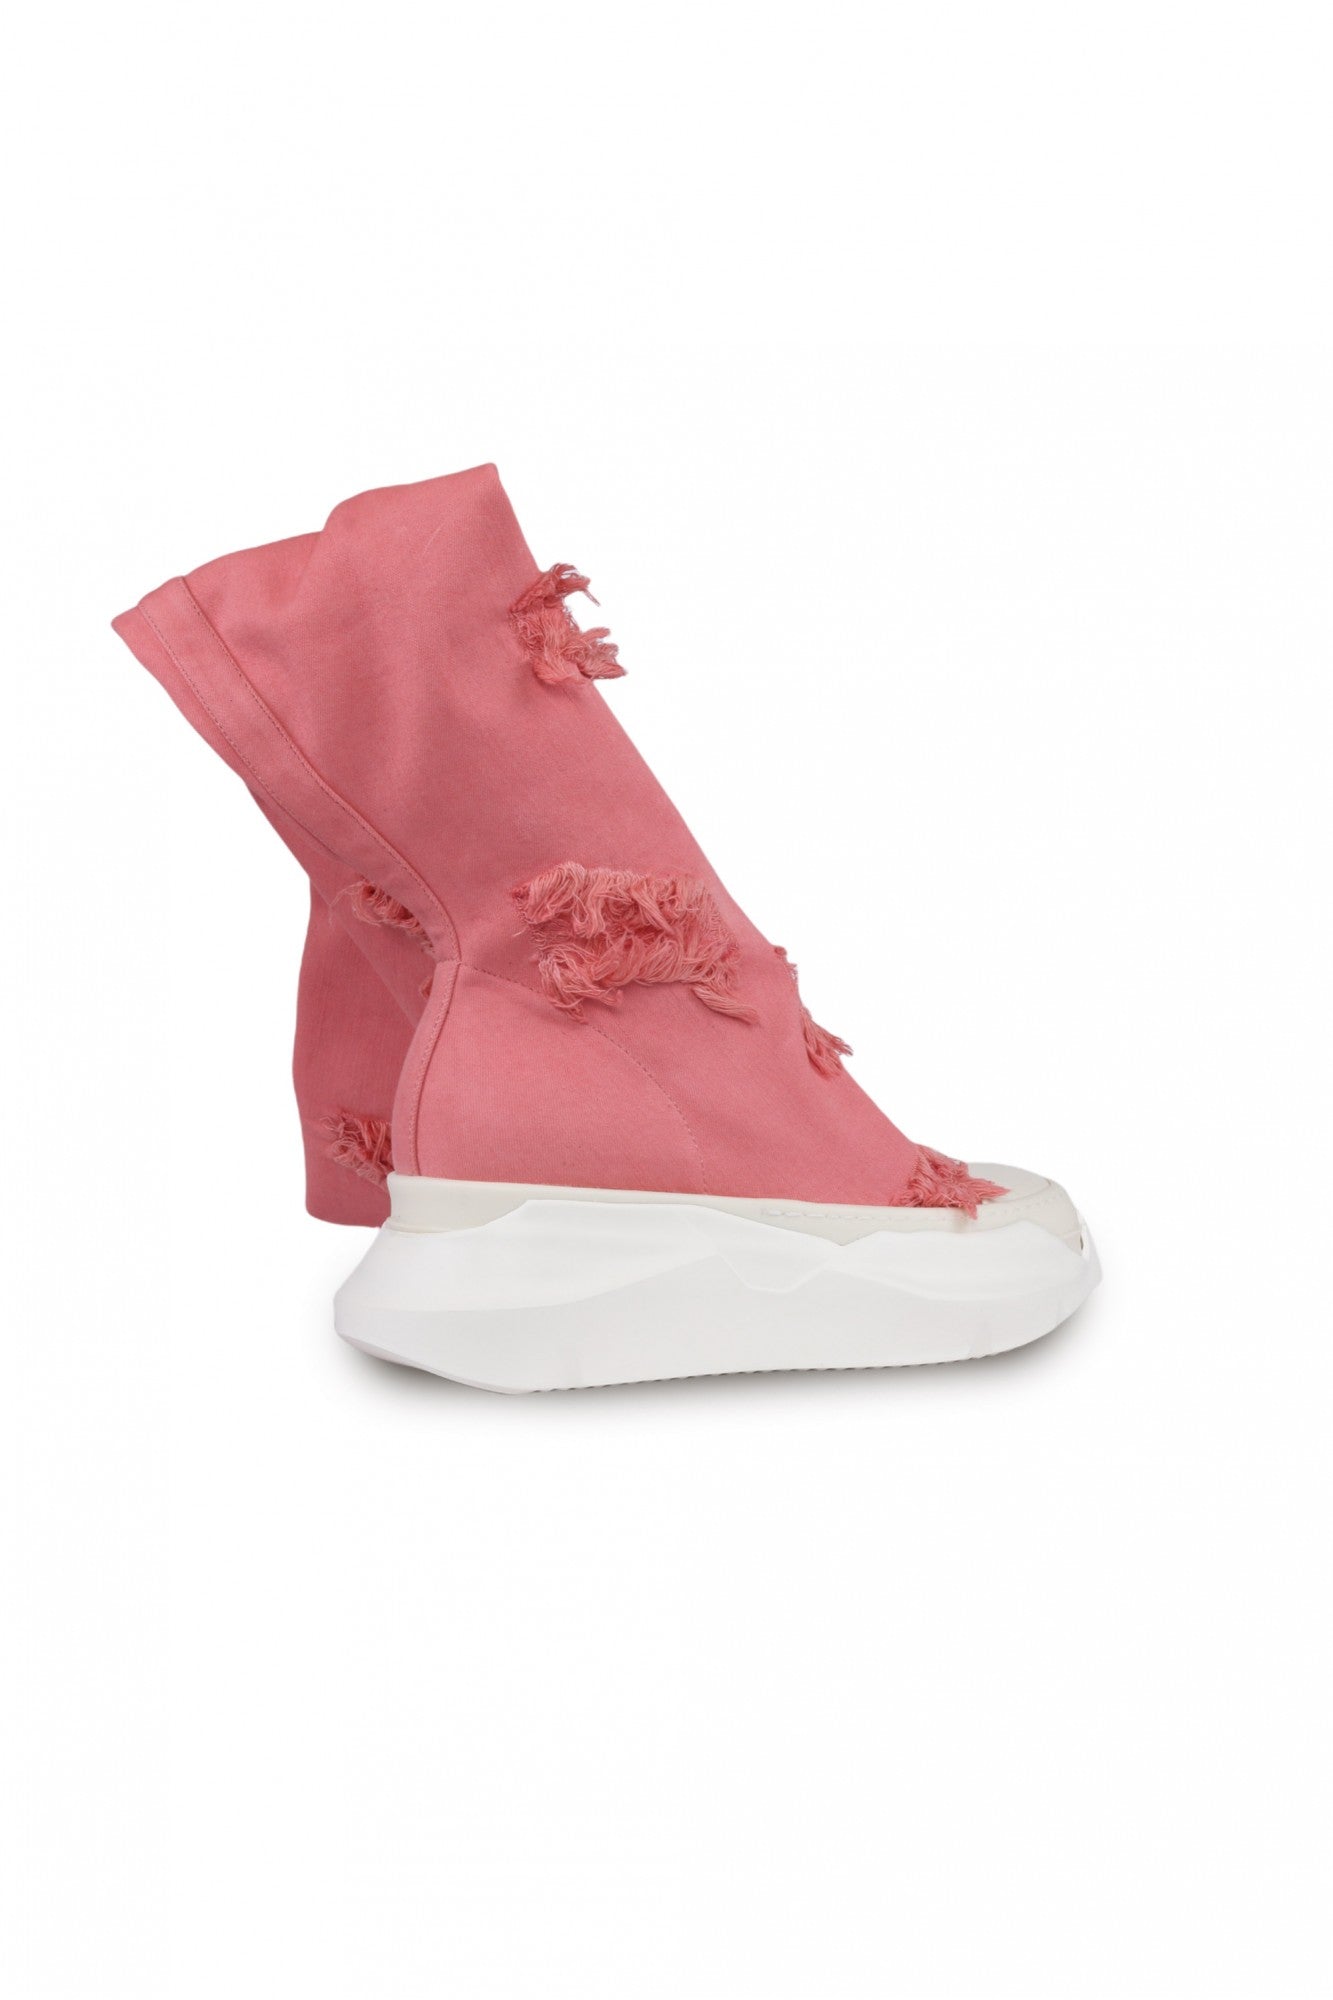 Rick Owens DRKSHDW Pink Distressed Abstract Socks Sneakers – Acroera